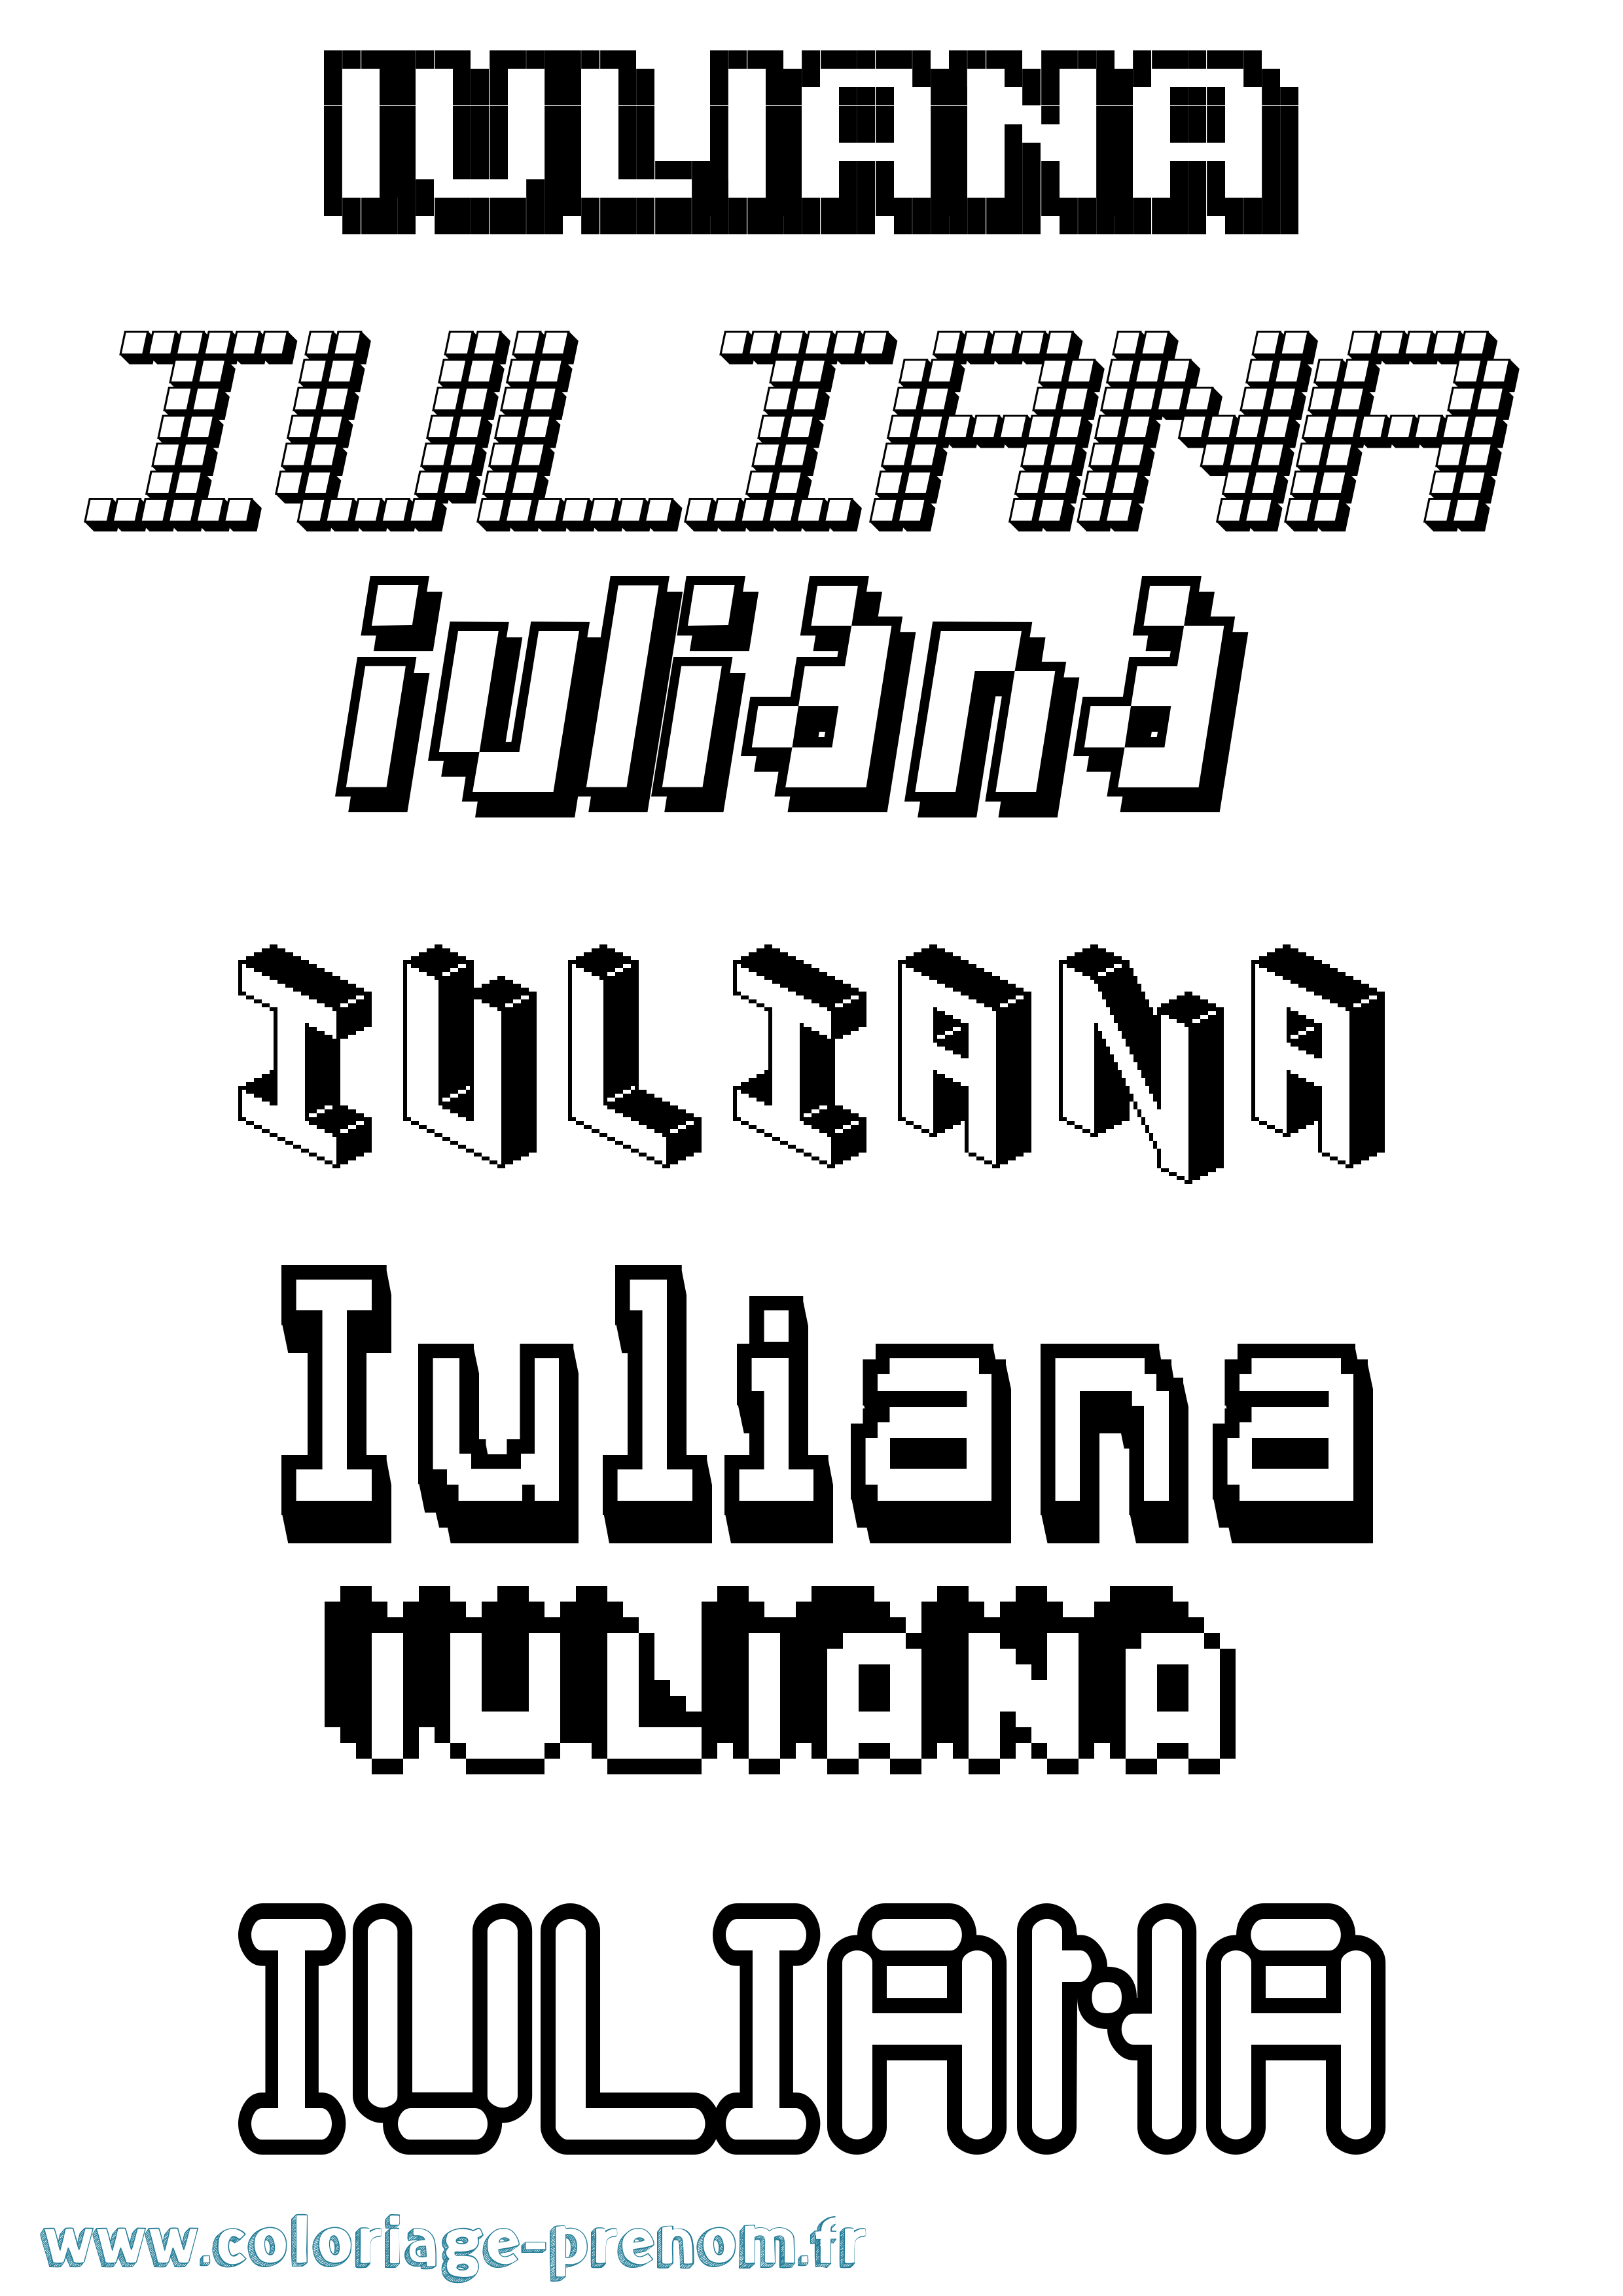 Coloriage prénom Iuliana Pixel